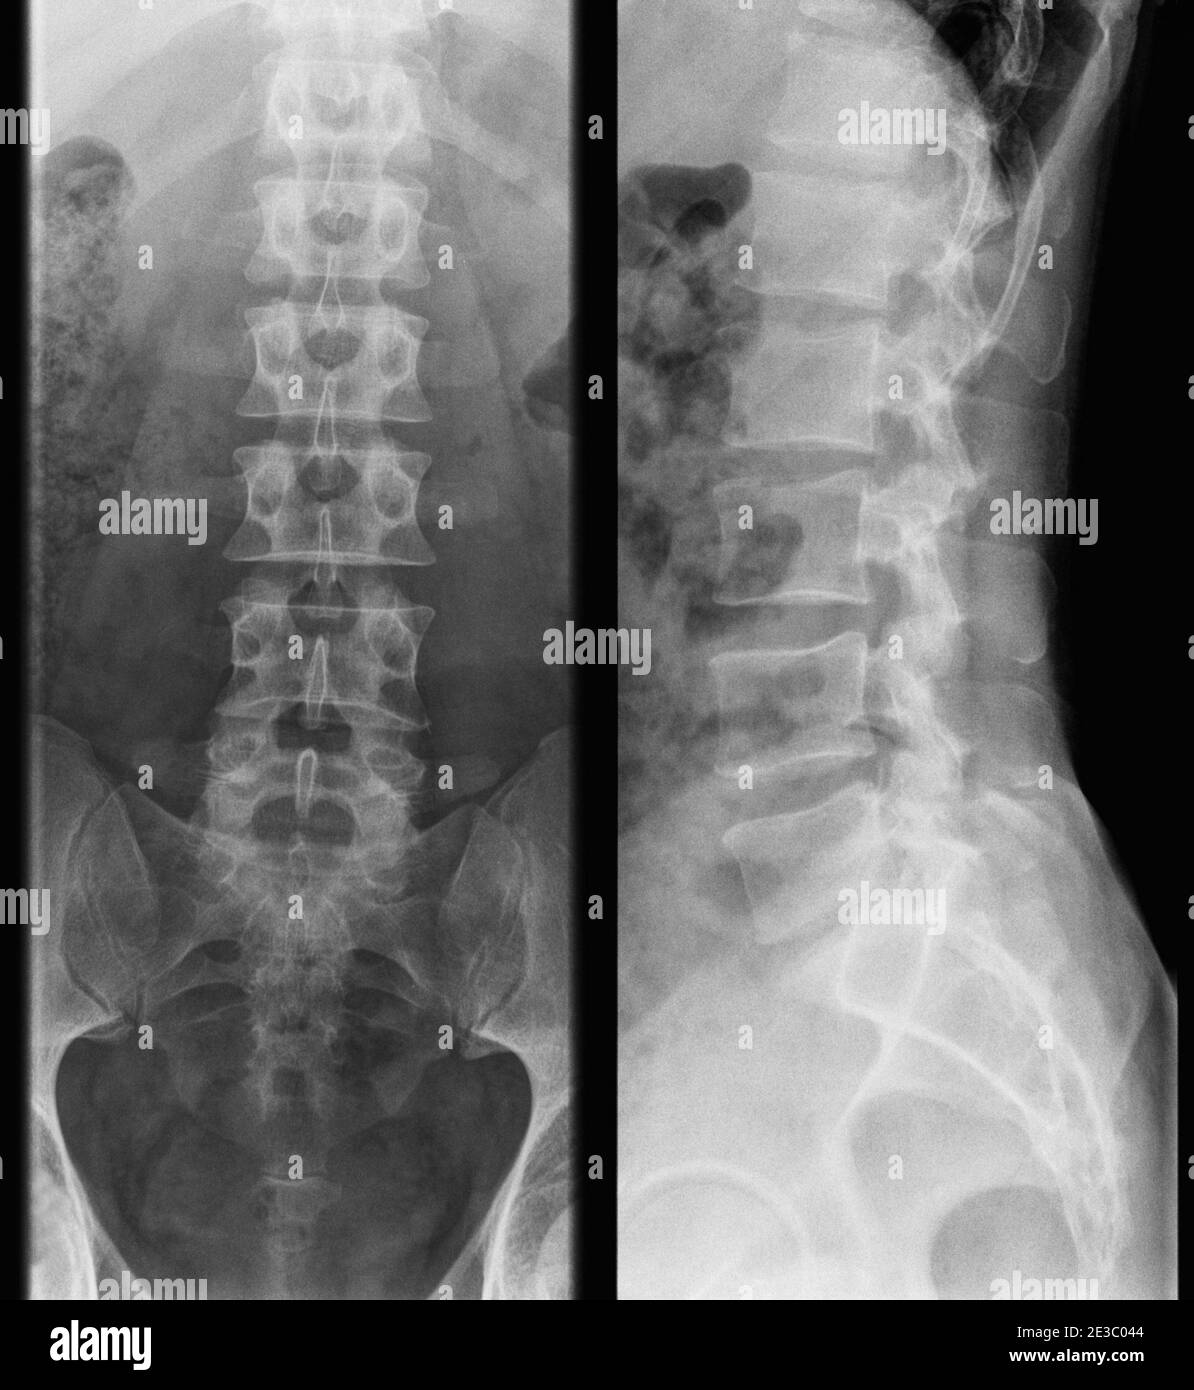 foto a raggi x della colonna lombare umana - uomo adulto, vista frontale e laterale Foto Stock